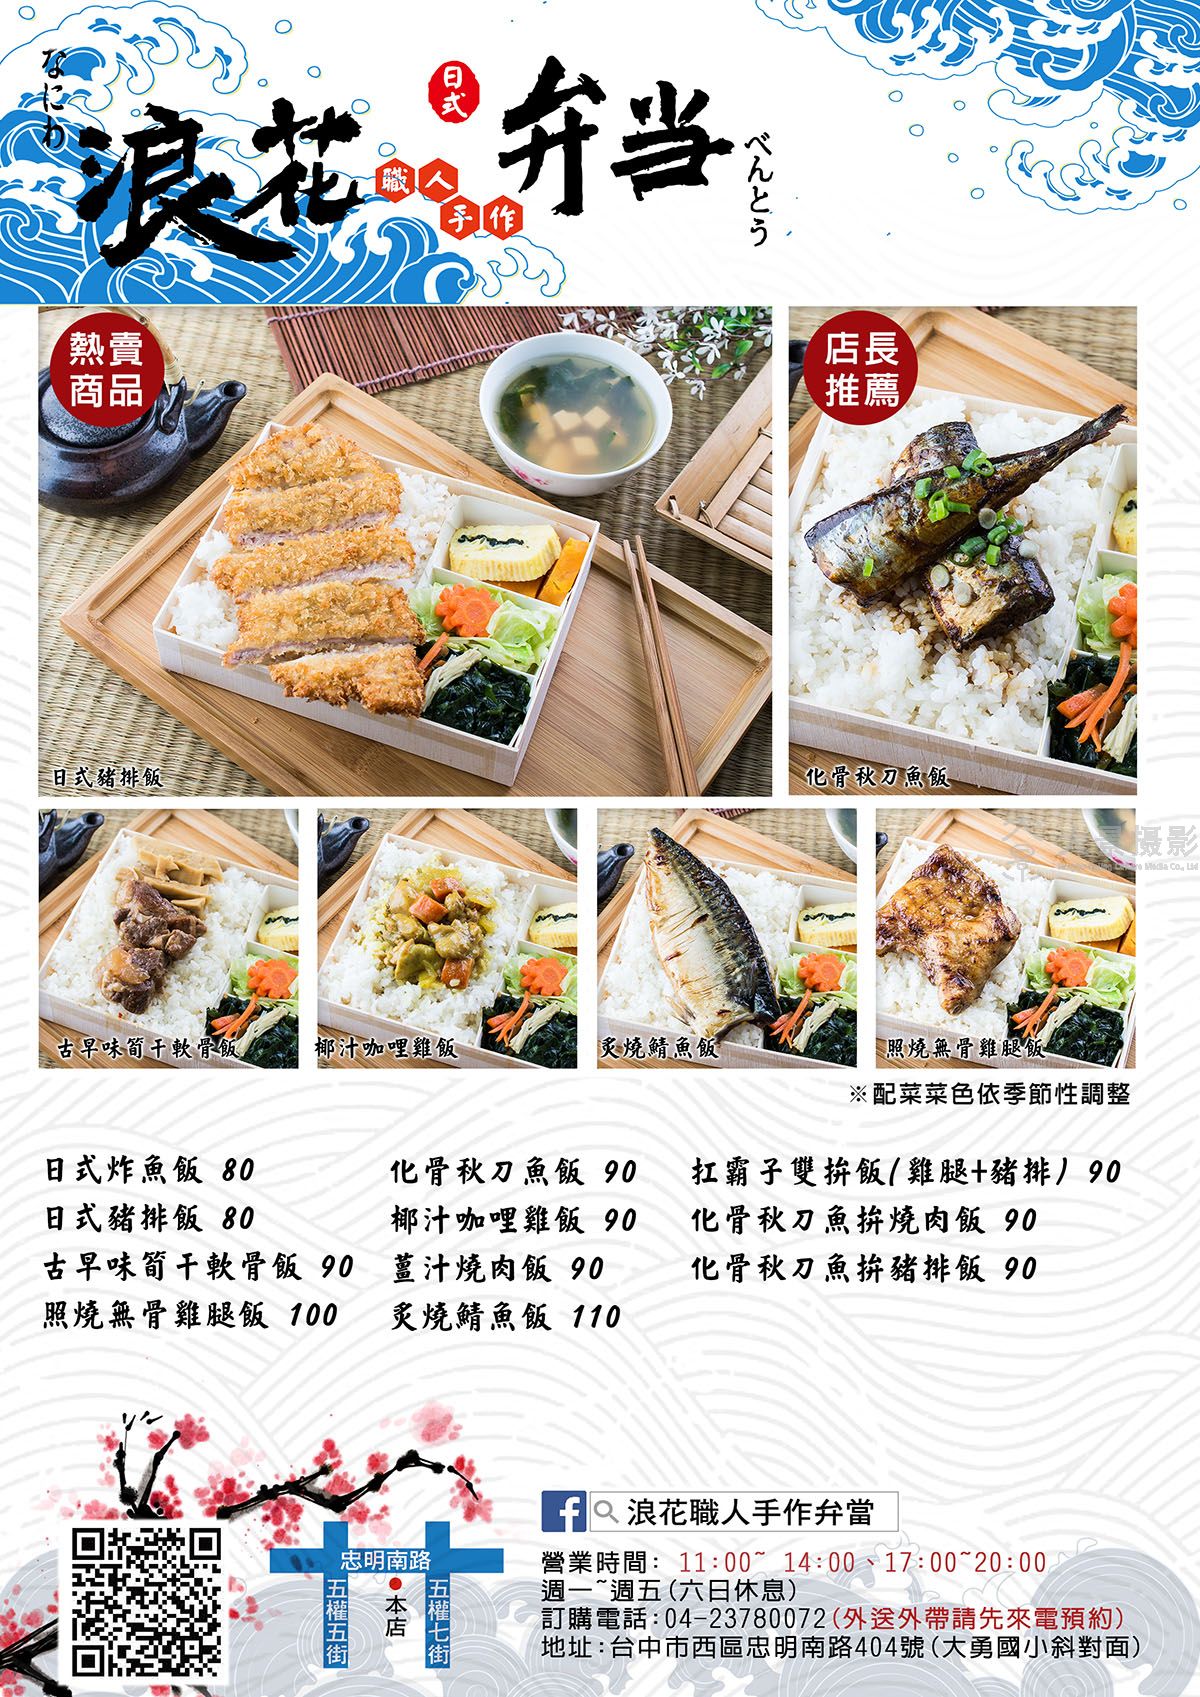 上海菜单设计电话